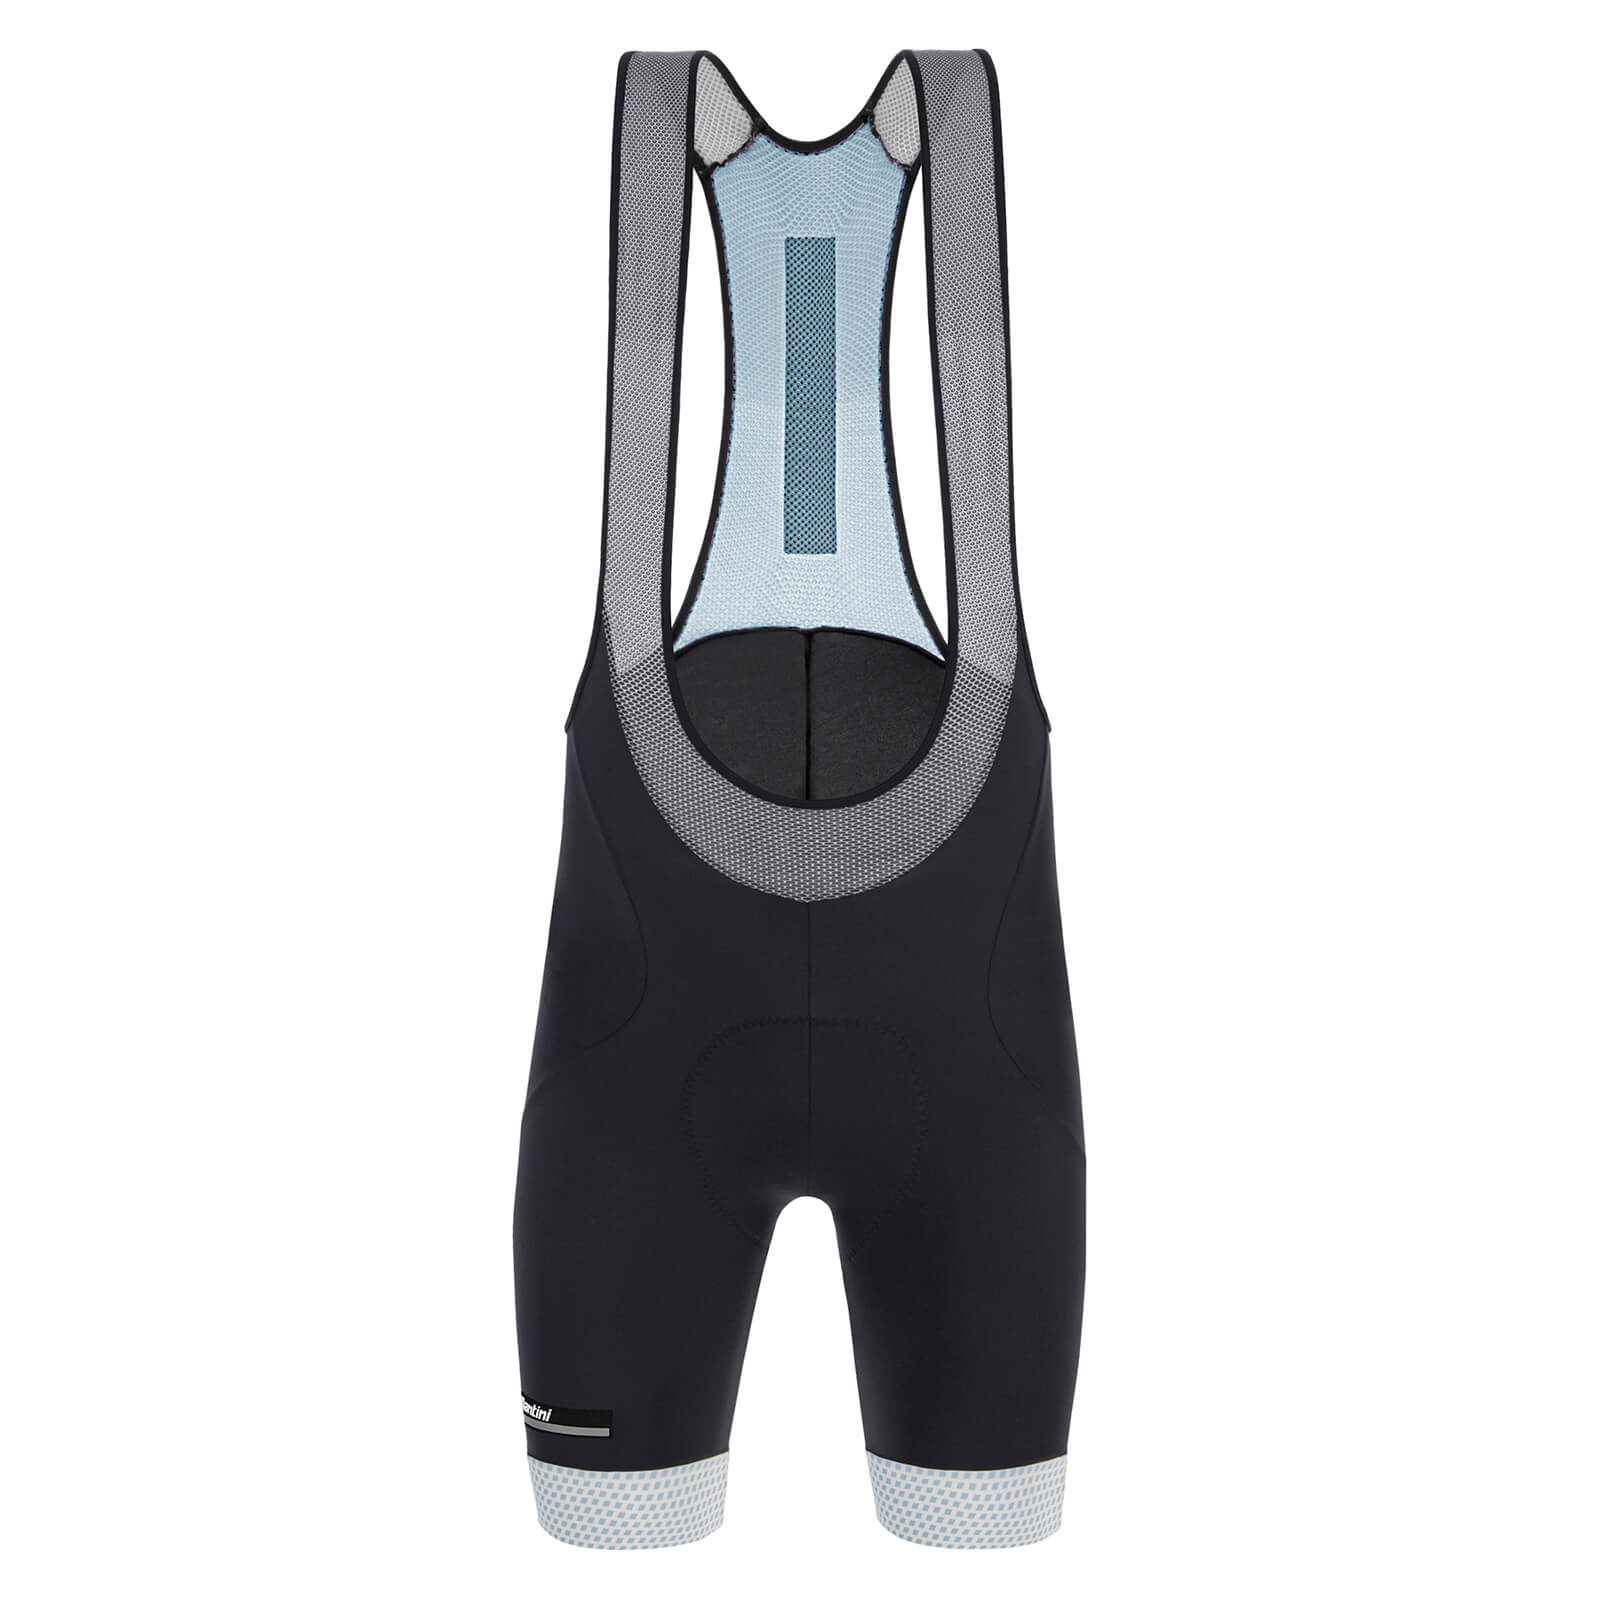 Santini Karma Kite Bib Shorts - XL - Titanium Gray